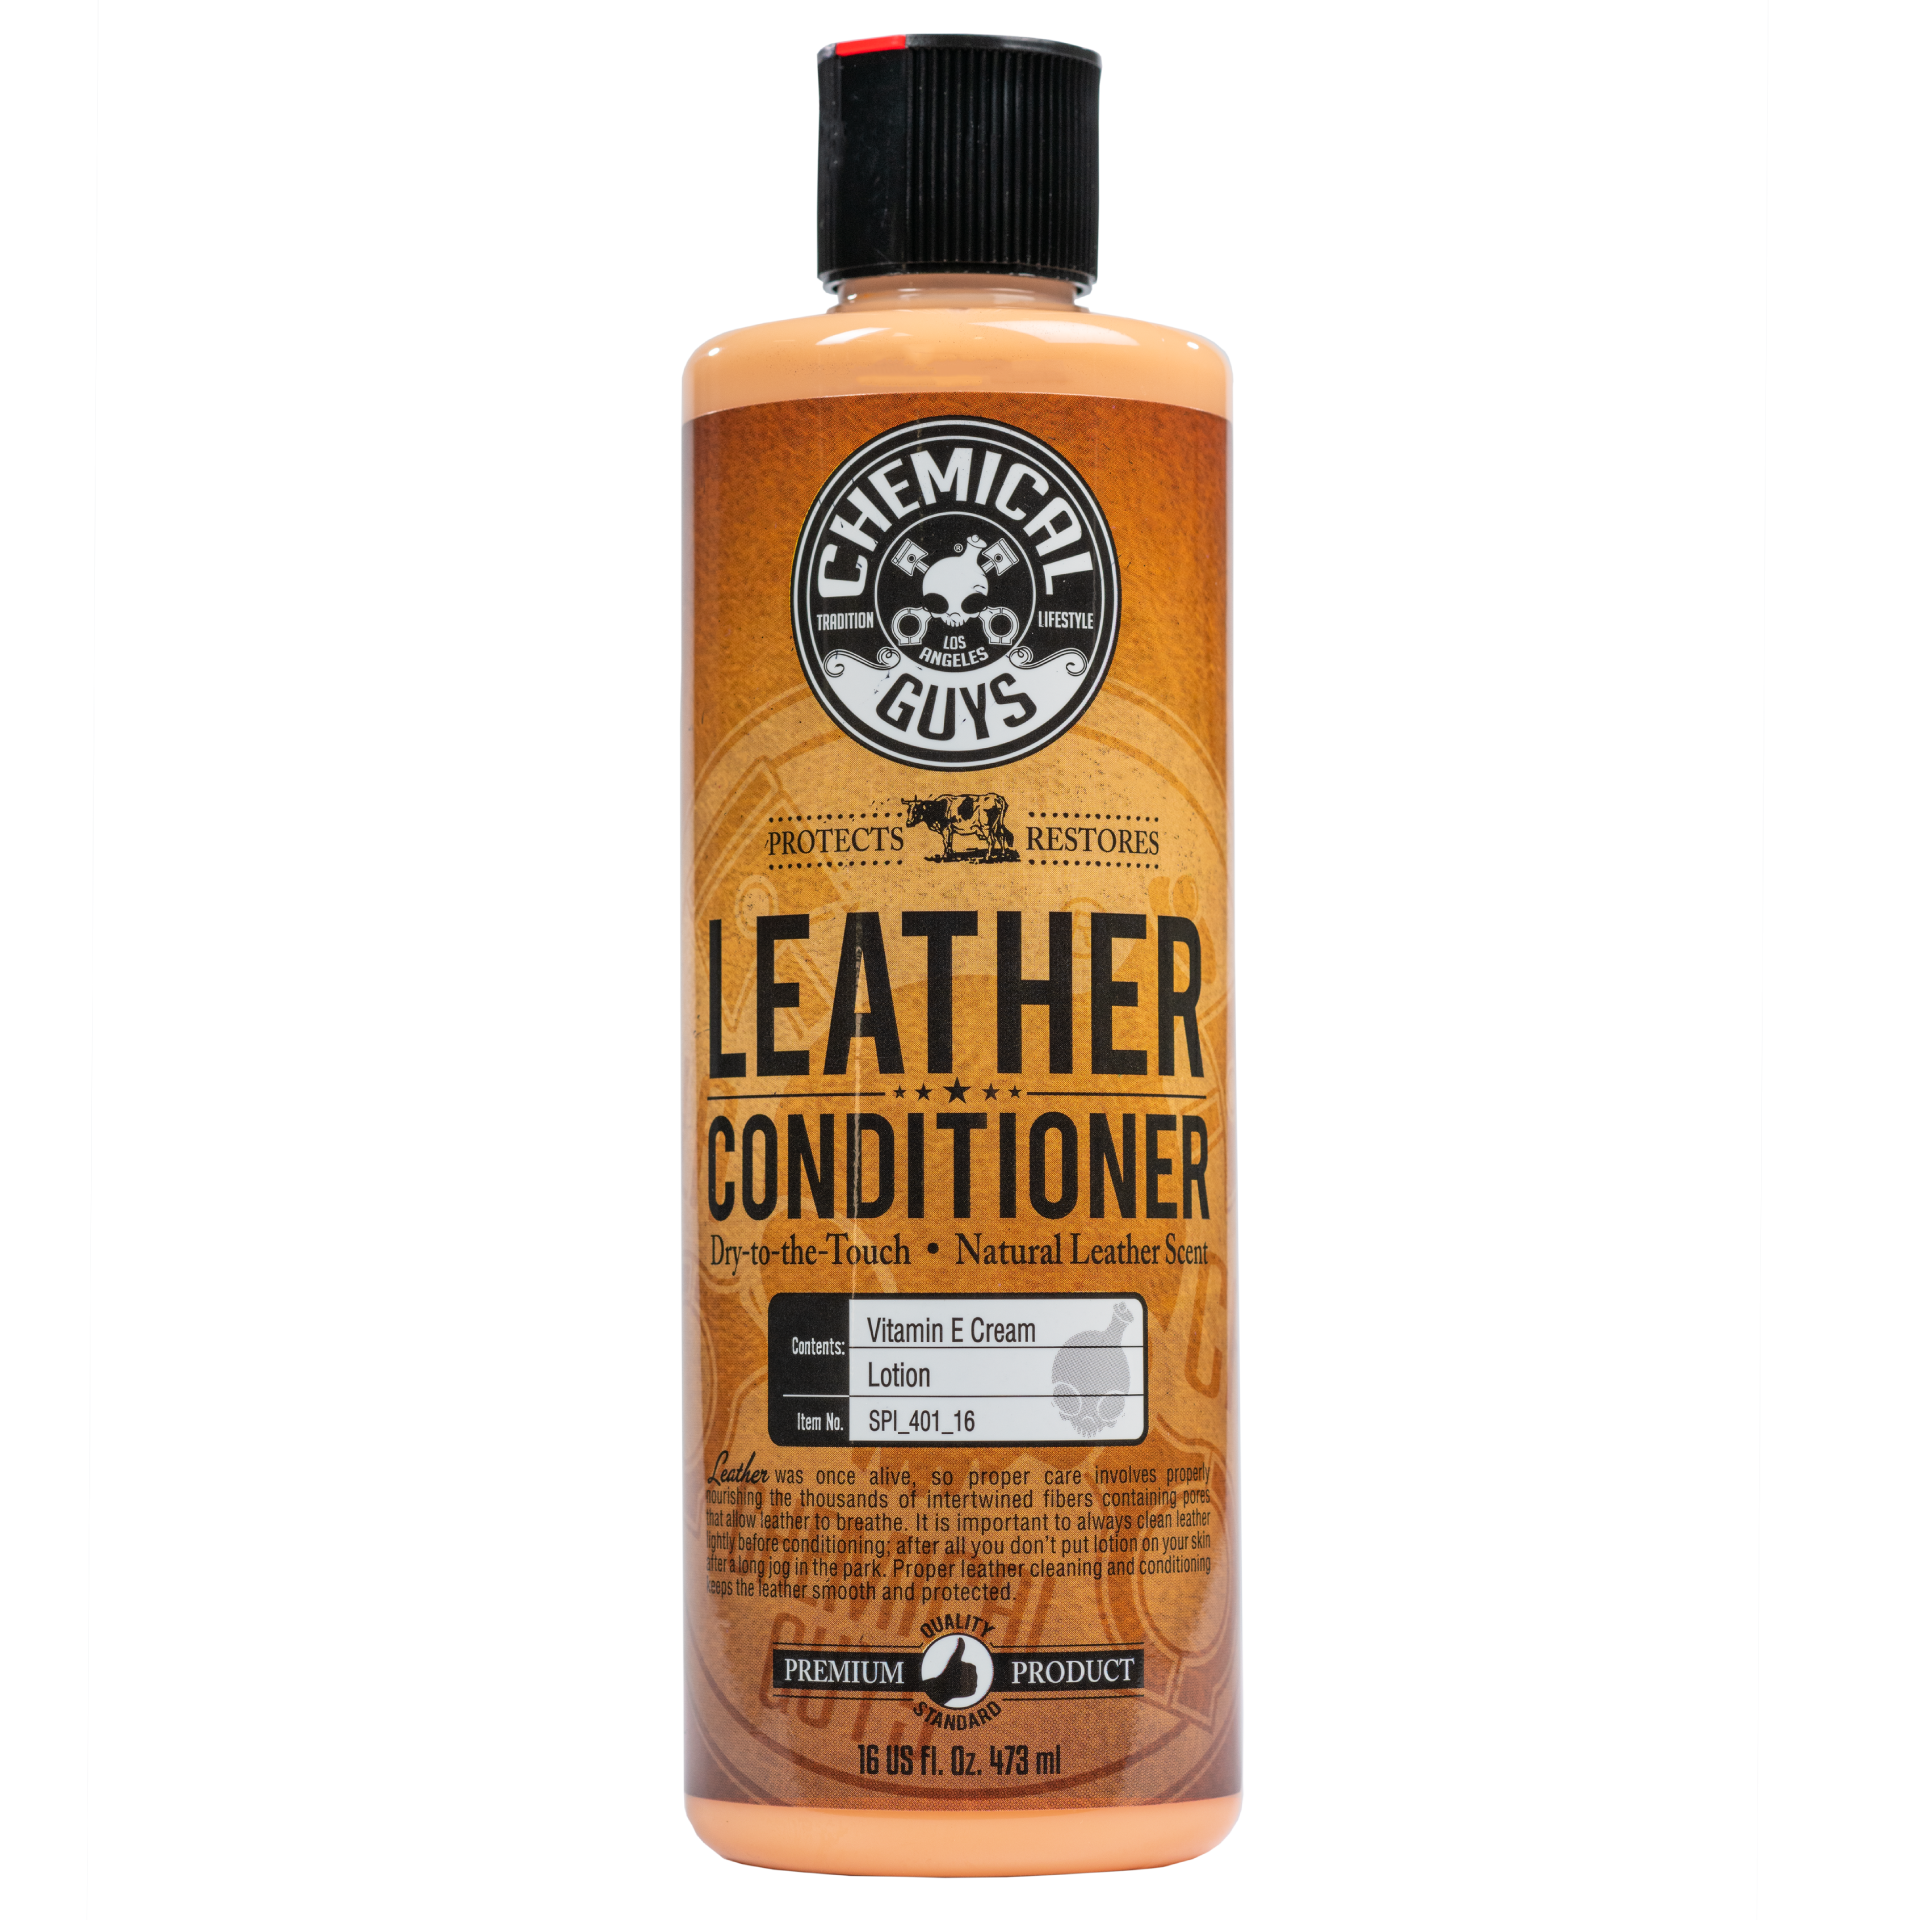 Leather Vinyl Conditioner - California Custom Products Australia